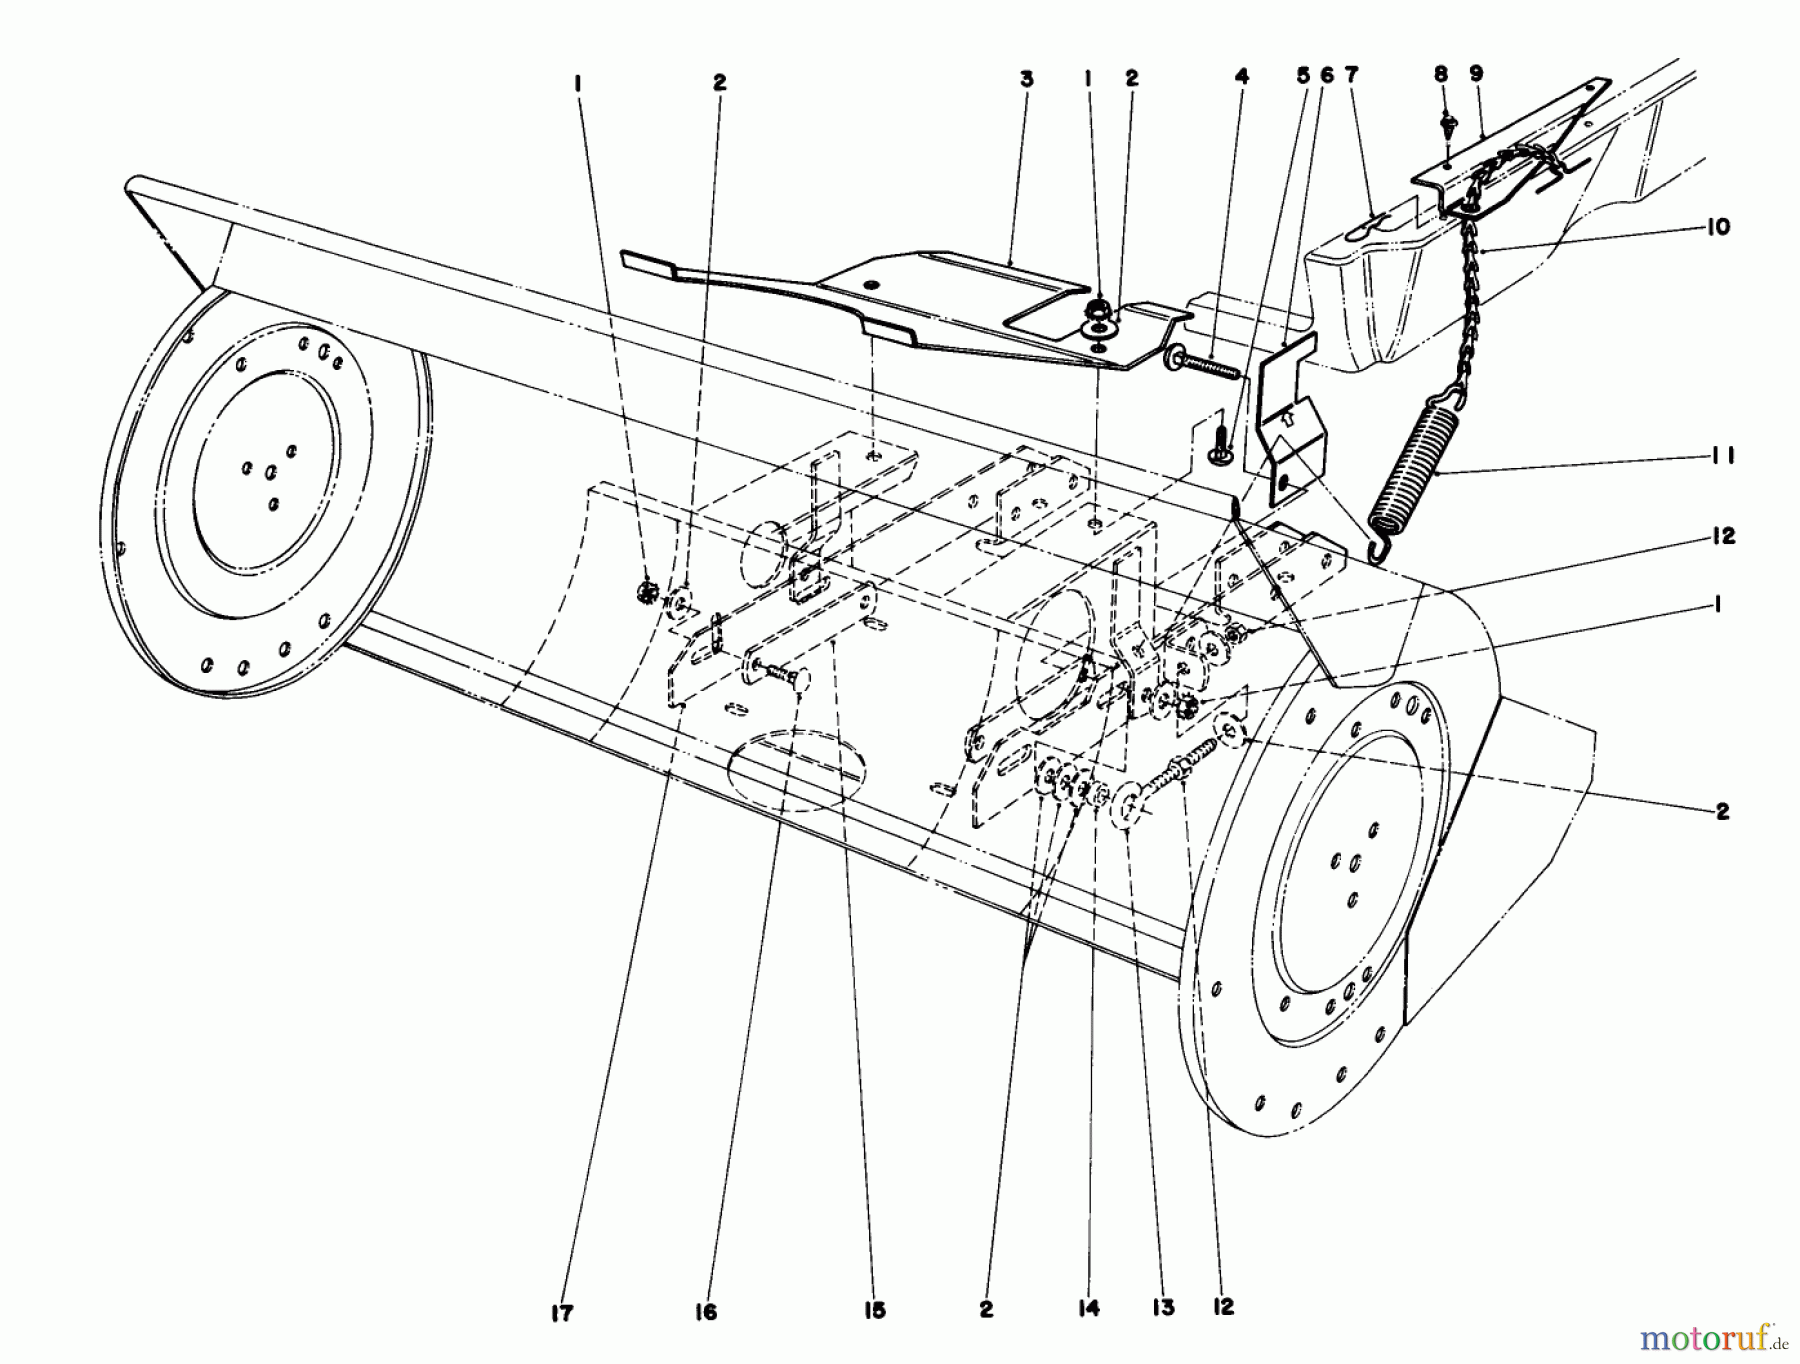  Toro Neu Mowers, Lawn & Garden Tractor Seite 1 57300 (8-32) - Toro 8-32 Front Engine Rider, 1981 (1000001-1999999) 36